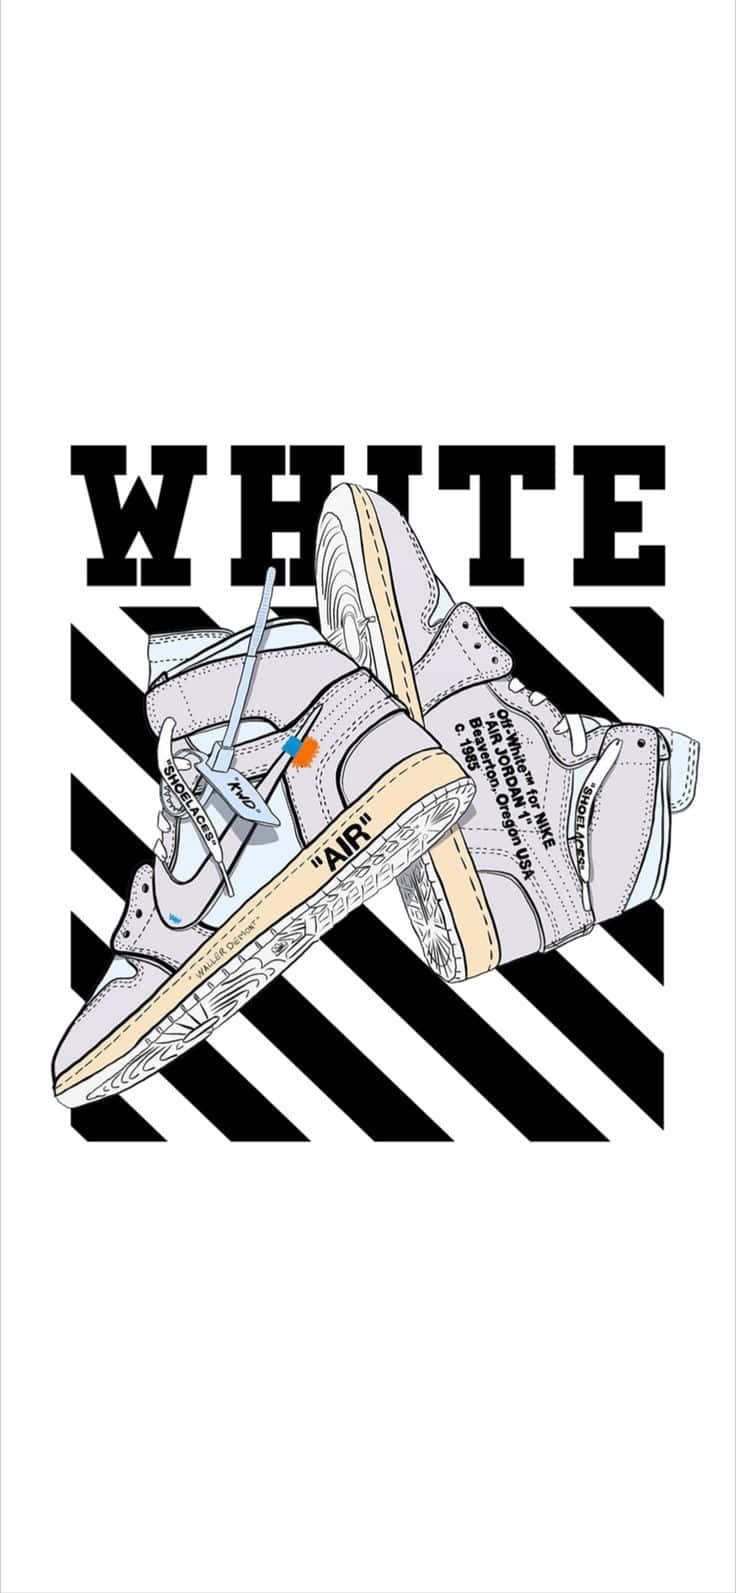 Vithet Elektrisk Stil! Bryter Gränser Med Off White Jordan 1 Sneaker. Wallpaper